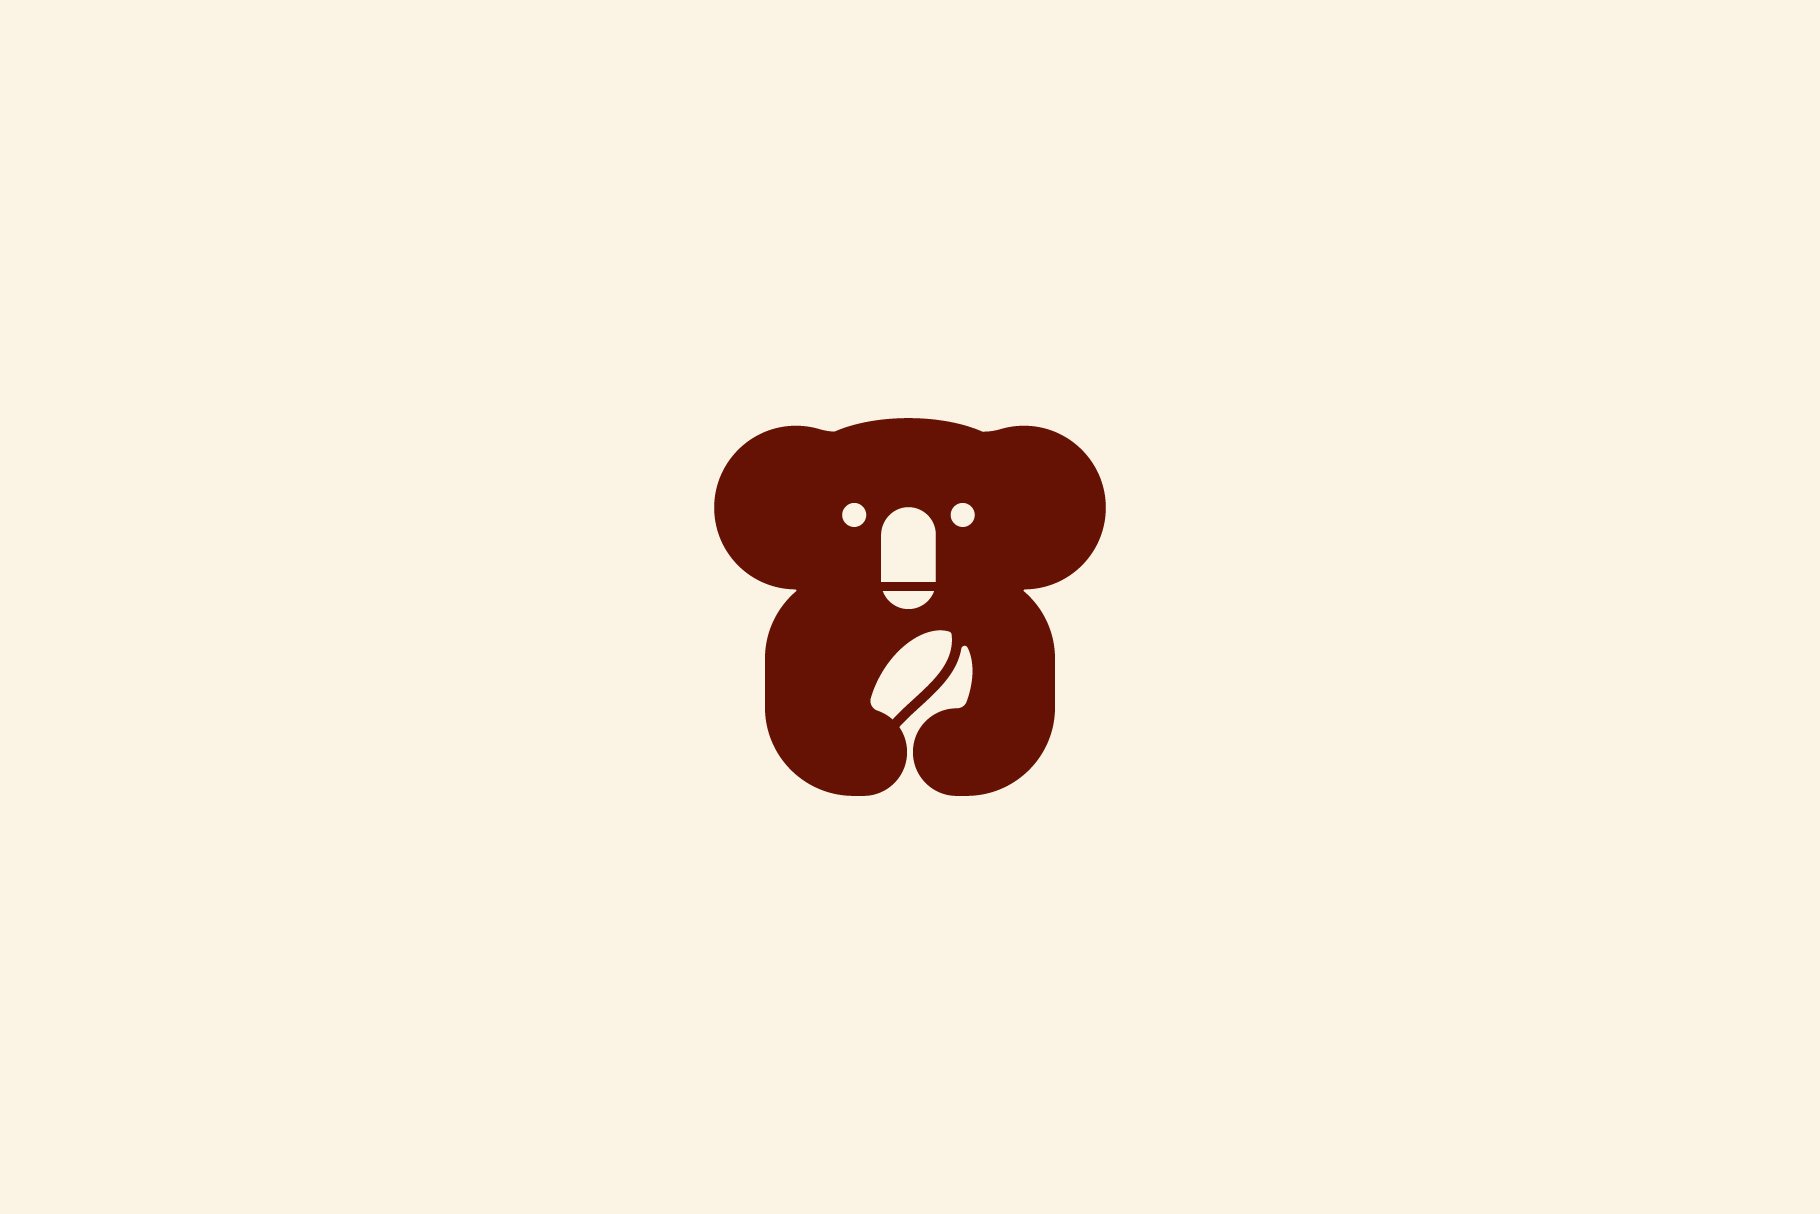 Koala coffee bean logo vector icon cover image.